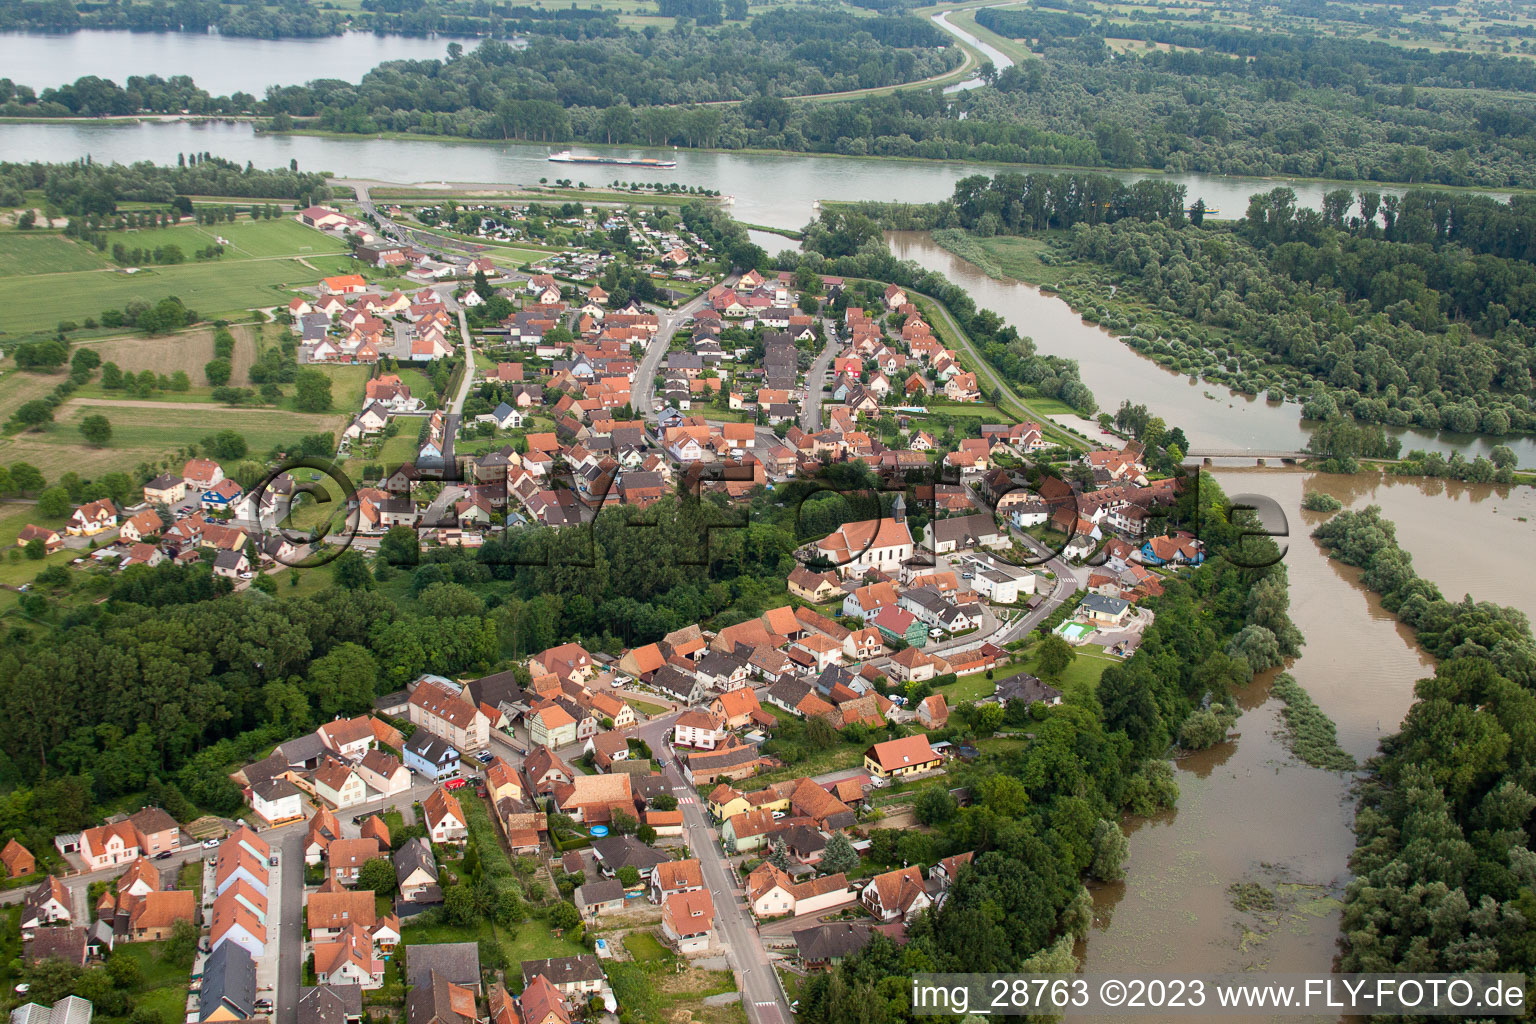 Munchhausen dans le département Bas Rhin, France vue d'en haut